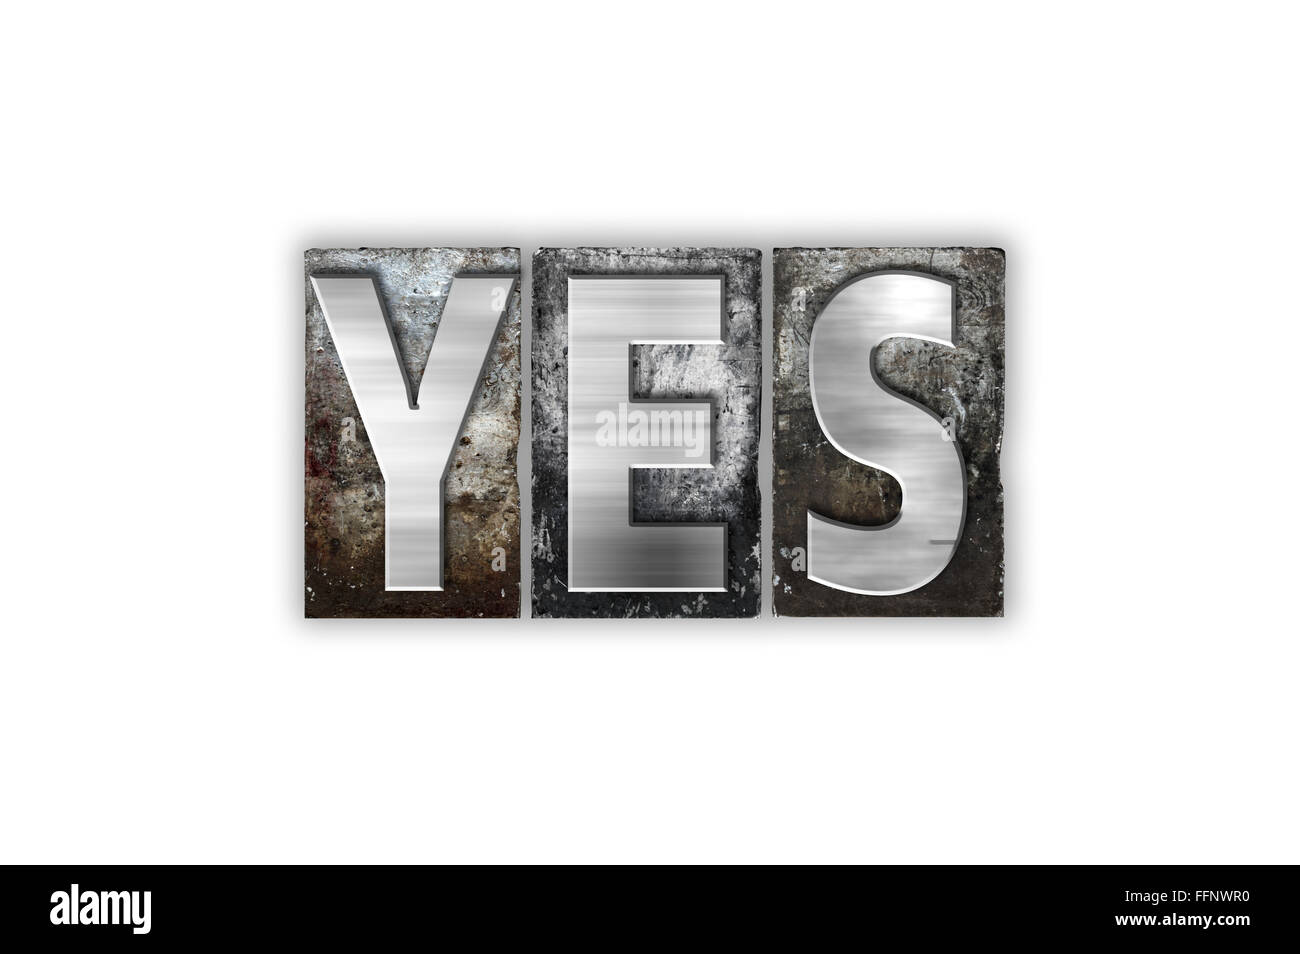 La palabra 'Yes' escrito en metal vintage tipografía aislado sobre un fondo blanco. Foto de stock